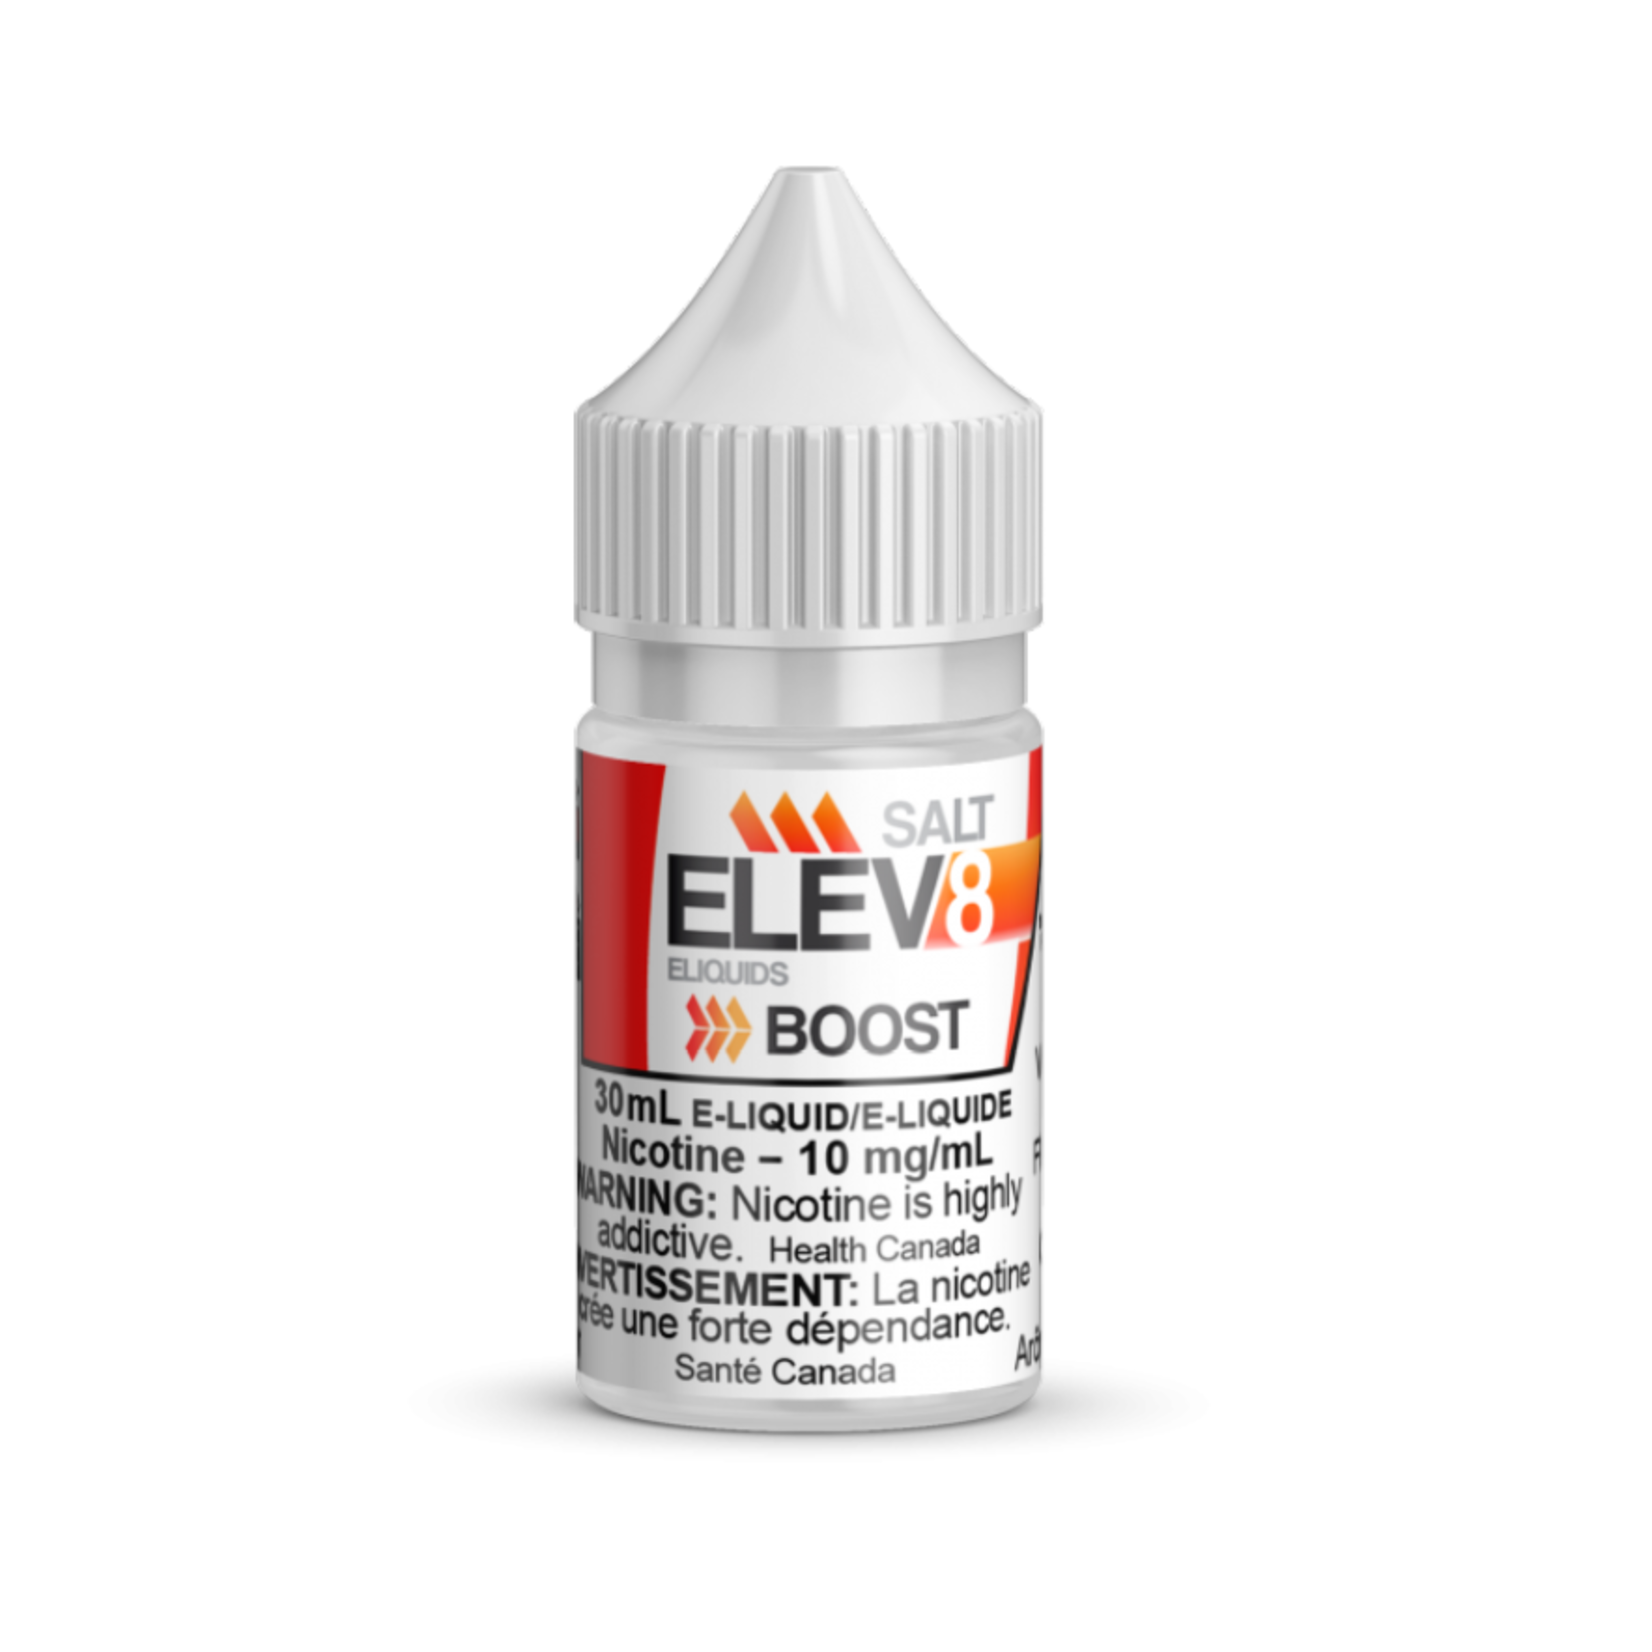 Elev8 Boost Salt